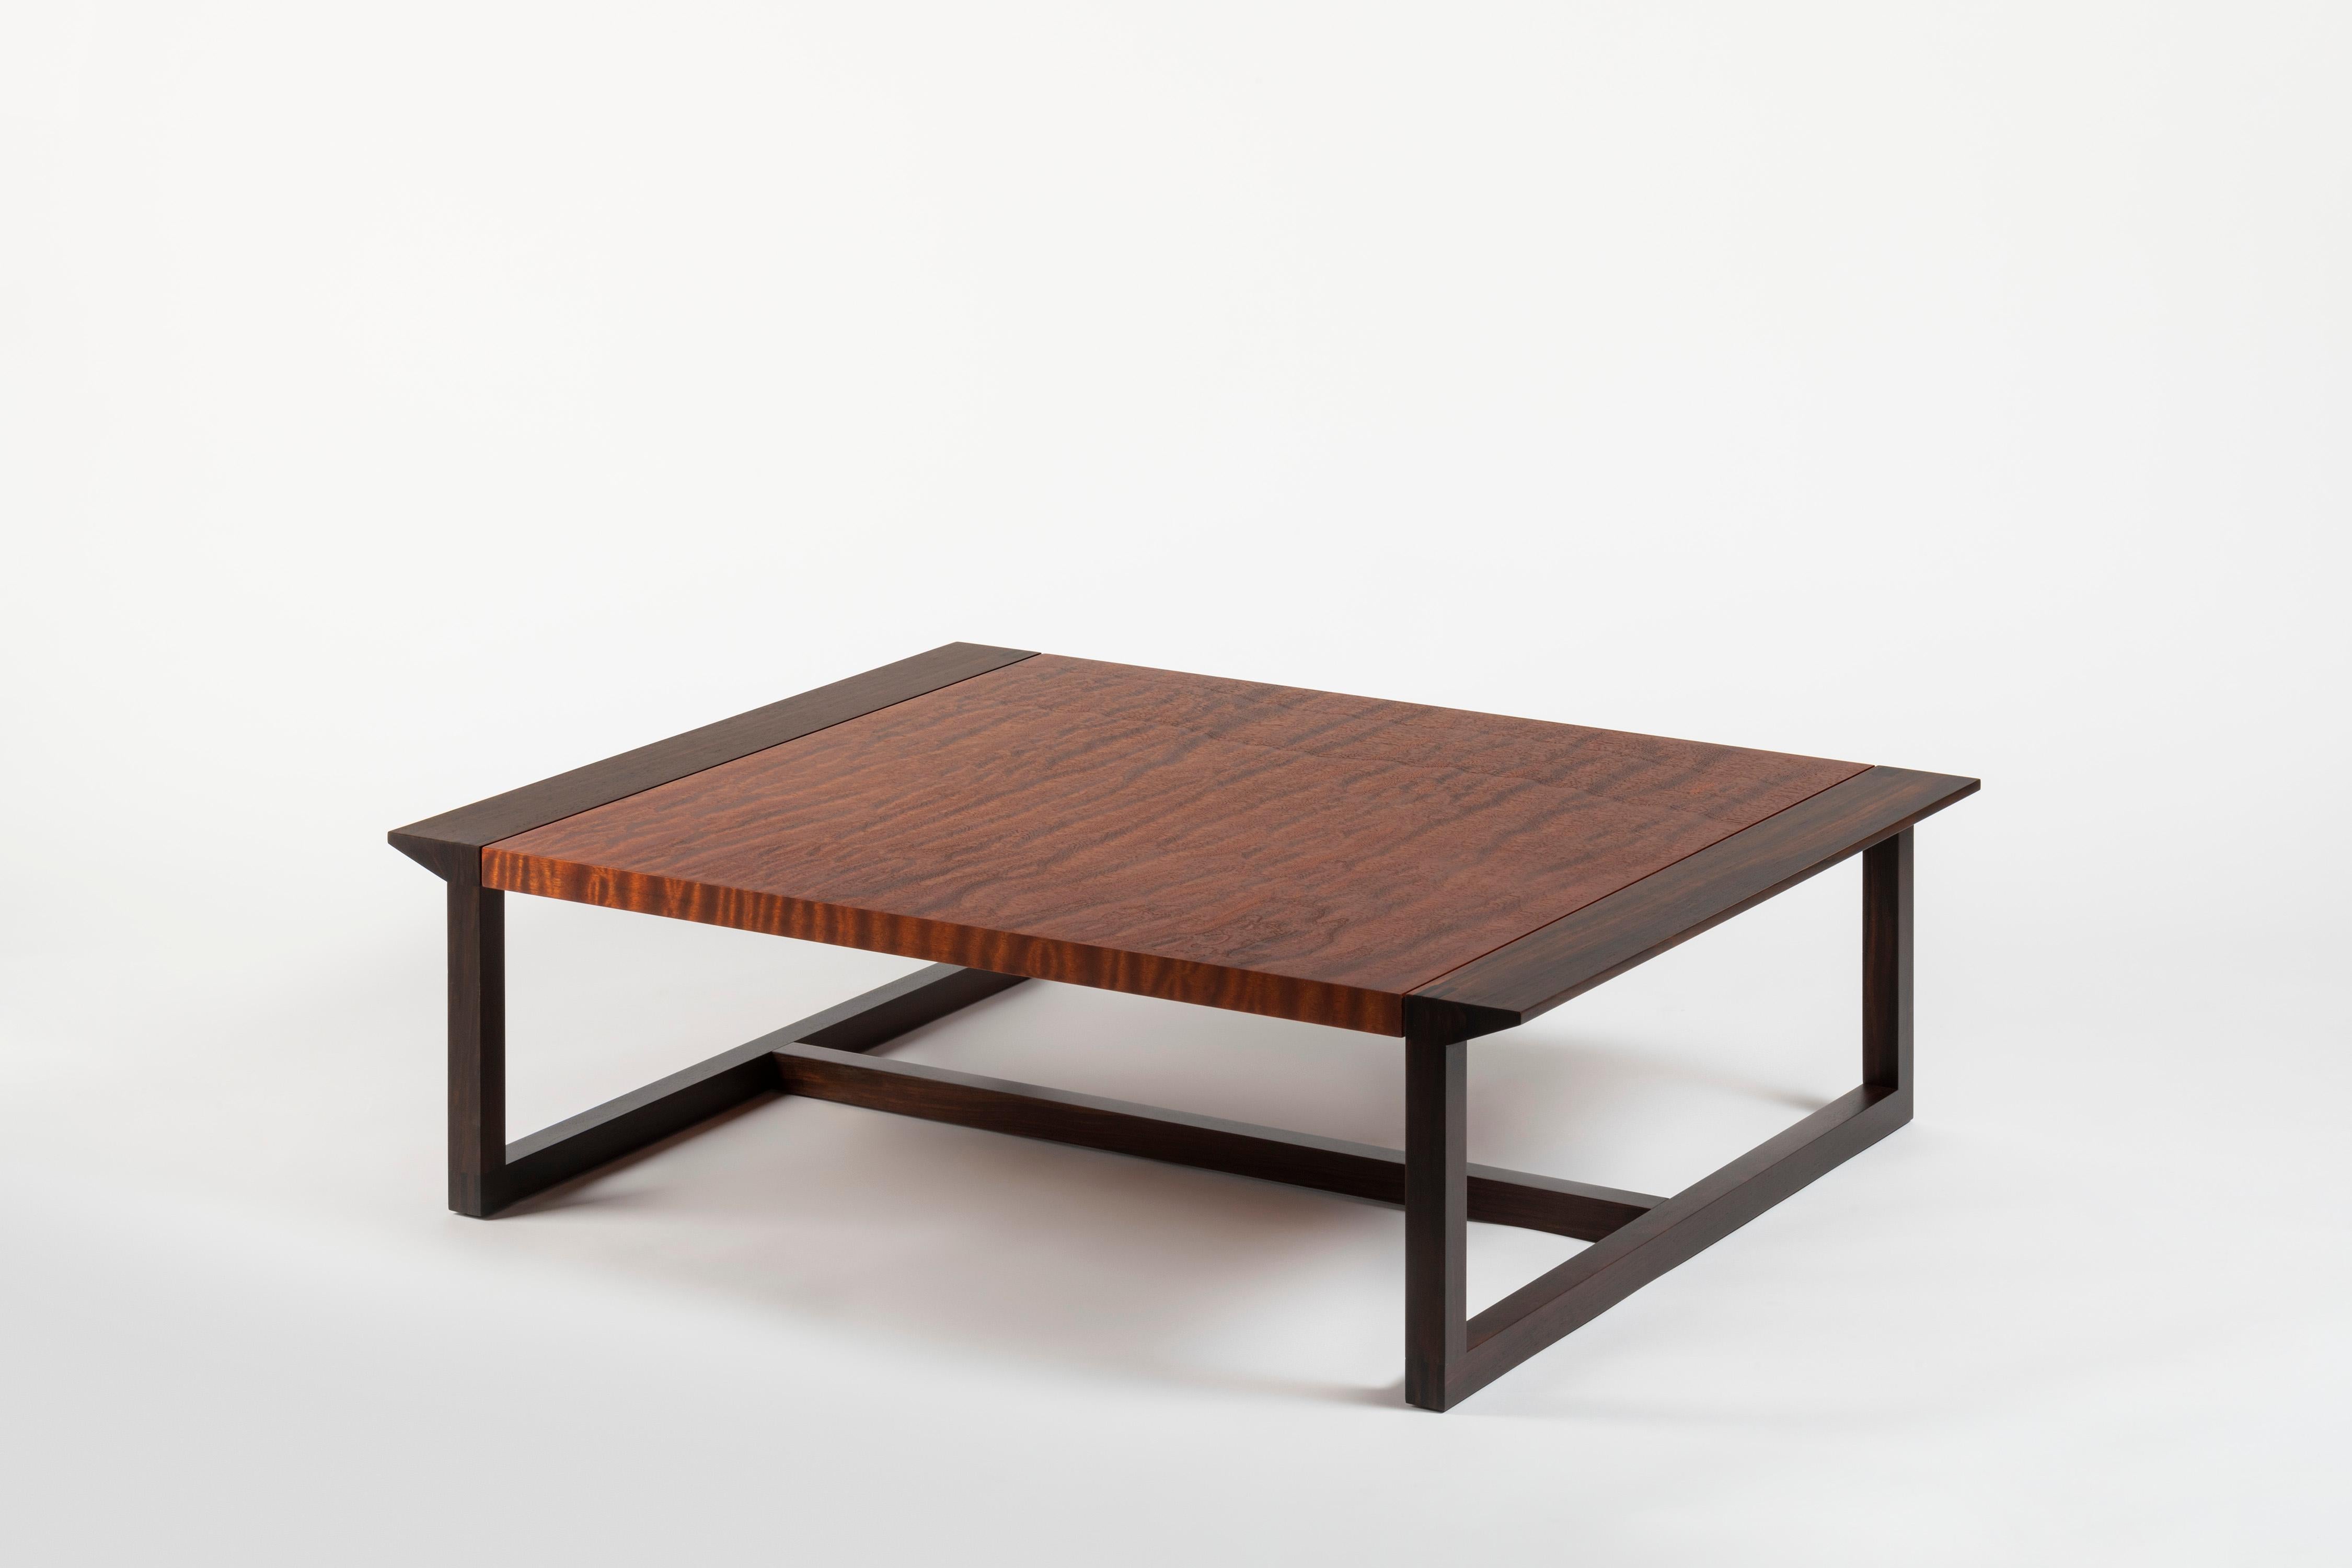 Cette table basse fait partie de la collection Vitruvio qui a été développée en coopération avec le studio de design CMP. Nous avons travaillé ensemble dans mon atelier en combinant la pensée créative avec l'héritage de la fabrication. Le résultat